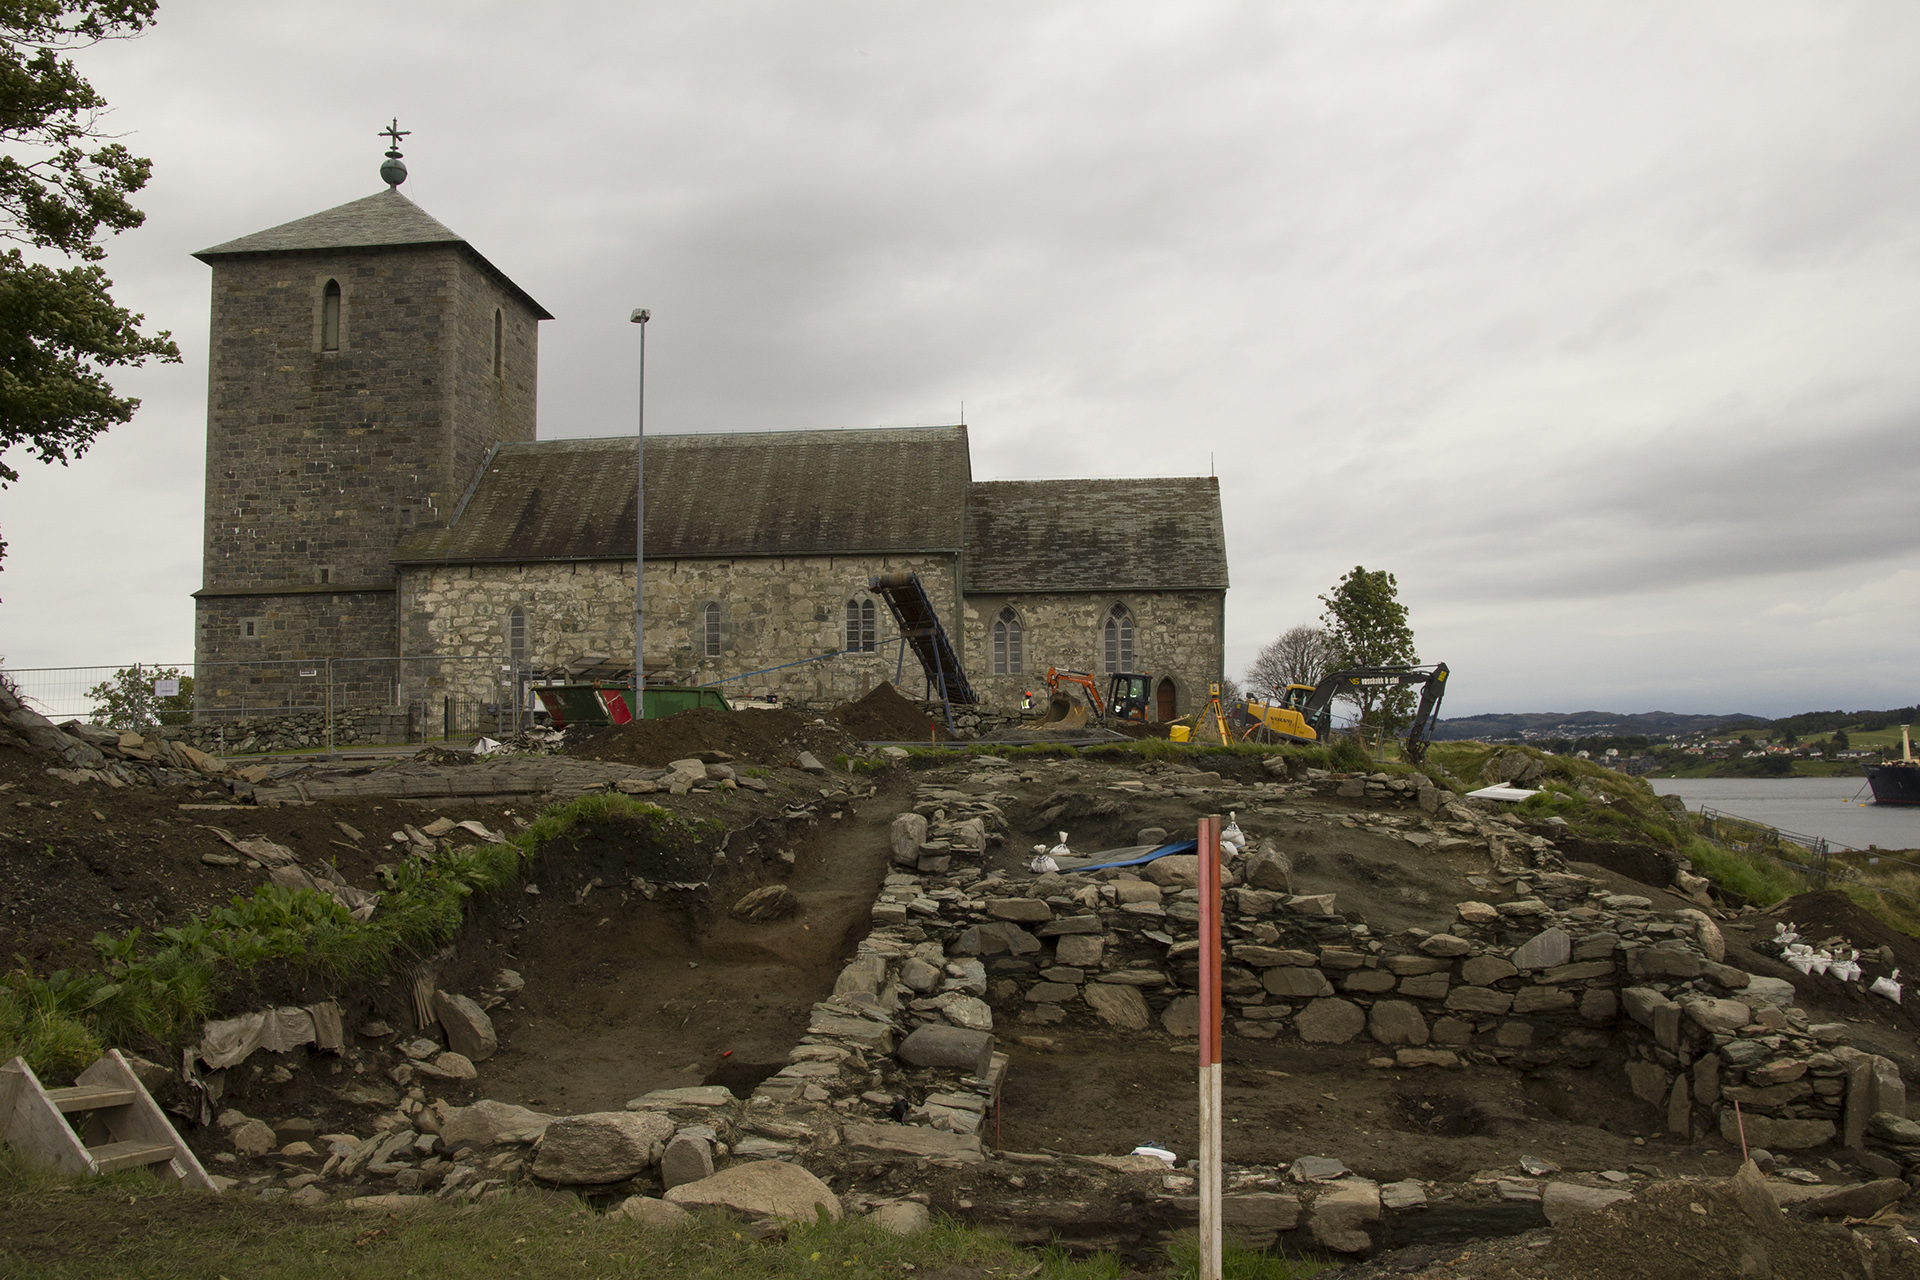 Bilde av ruinen av en kongsgård fra 1300-tallet funnet på Avaldsnes, Karmøy, ved siden av kirken. Foto: Karen Thommesen, Riksantikvaren